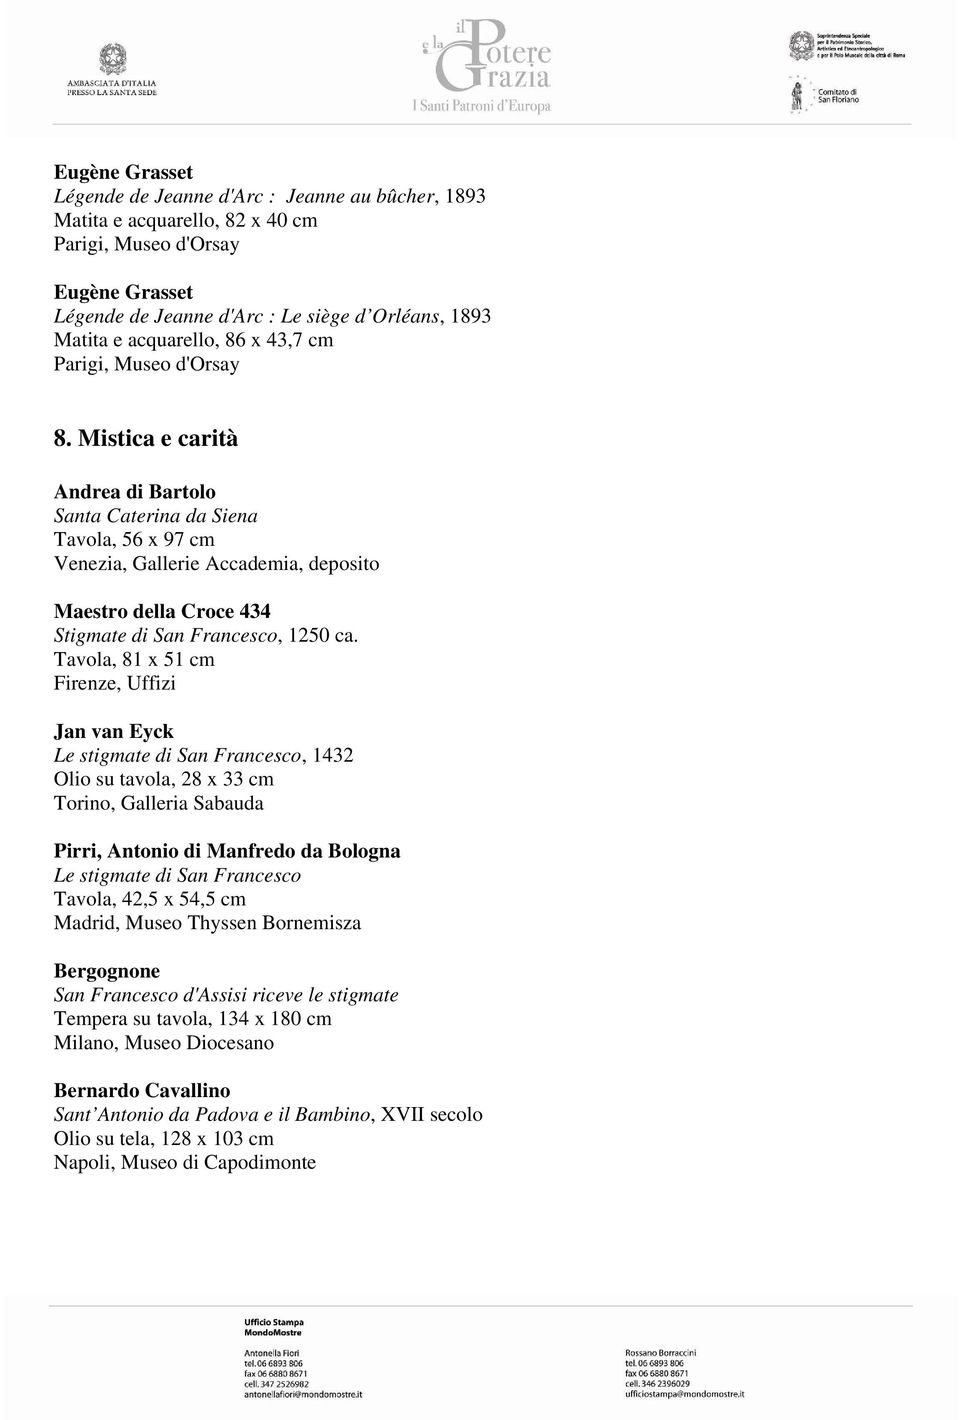 Mistica e carità Andrea di Bartolo Santa Caterina da Siena Tavola, 56 x 97 cm Venezia, Gallerie Accademia, deposito Maestro della Croce 434 Stigmate di San Francesco, 1250 ca.